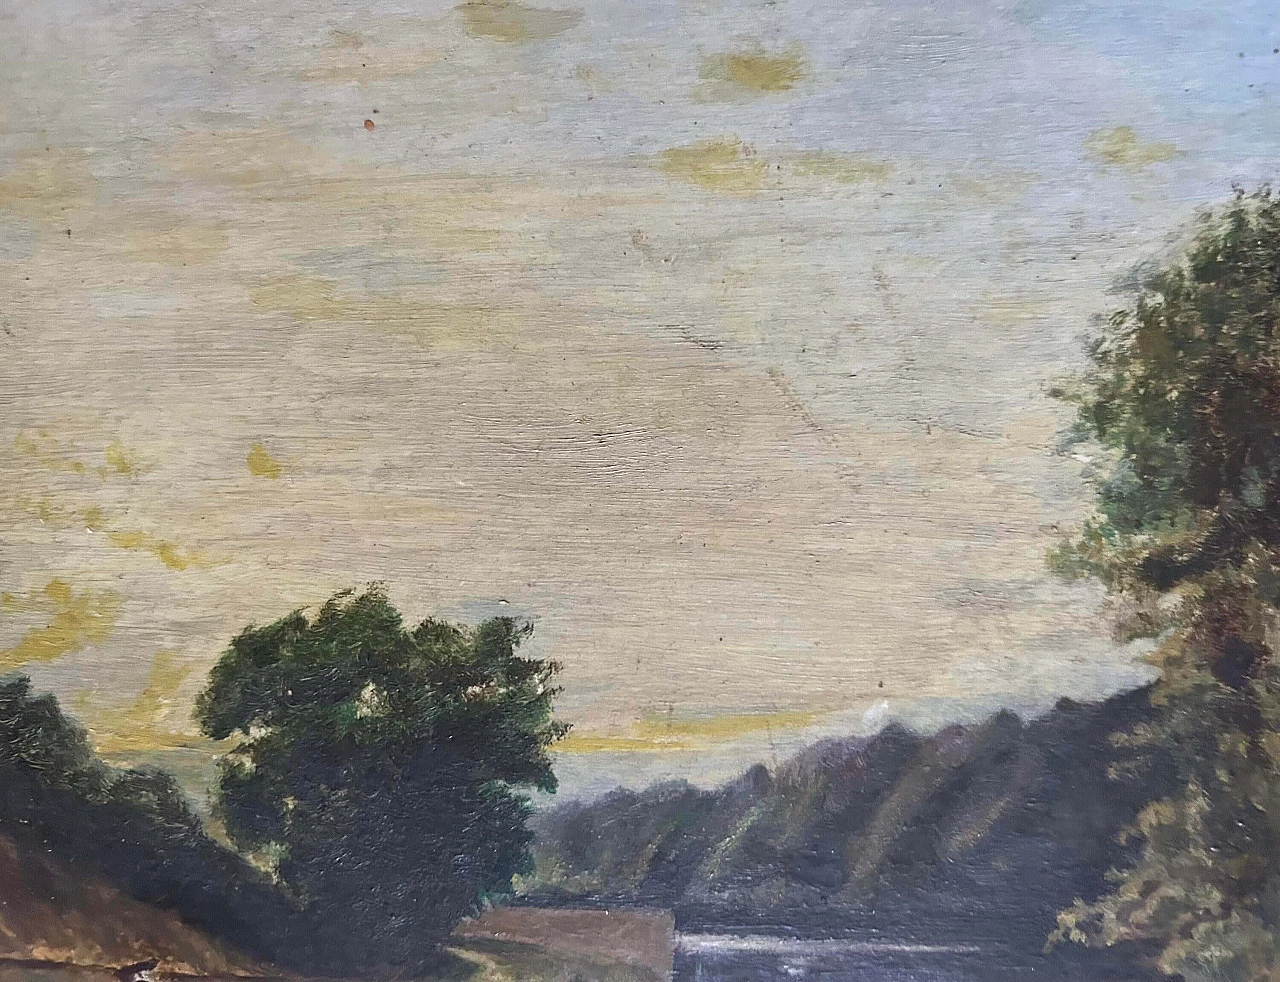 Paesaggio lacustre nello stile della Scuola di Barbizon, dipinto, anni '20 9